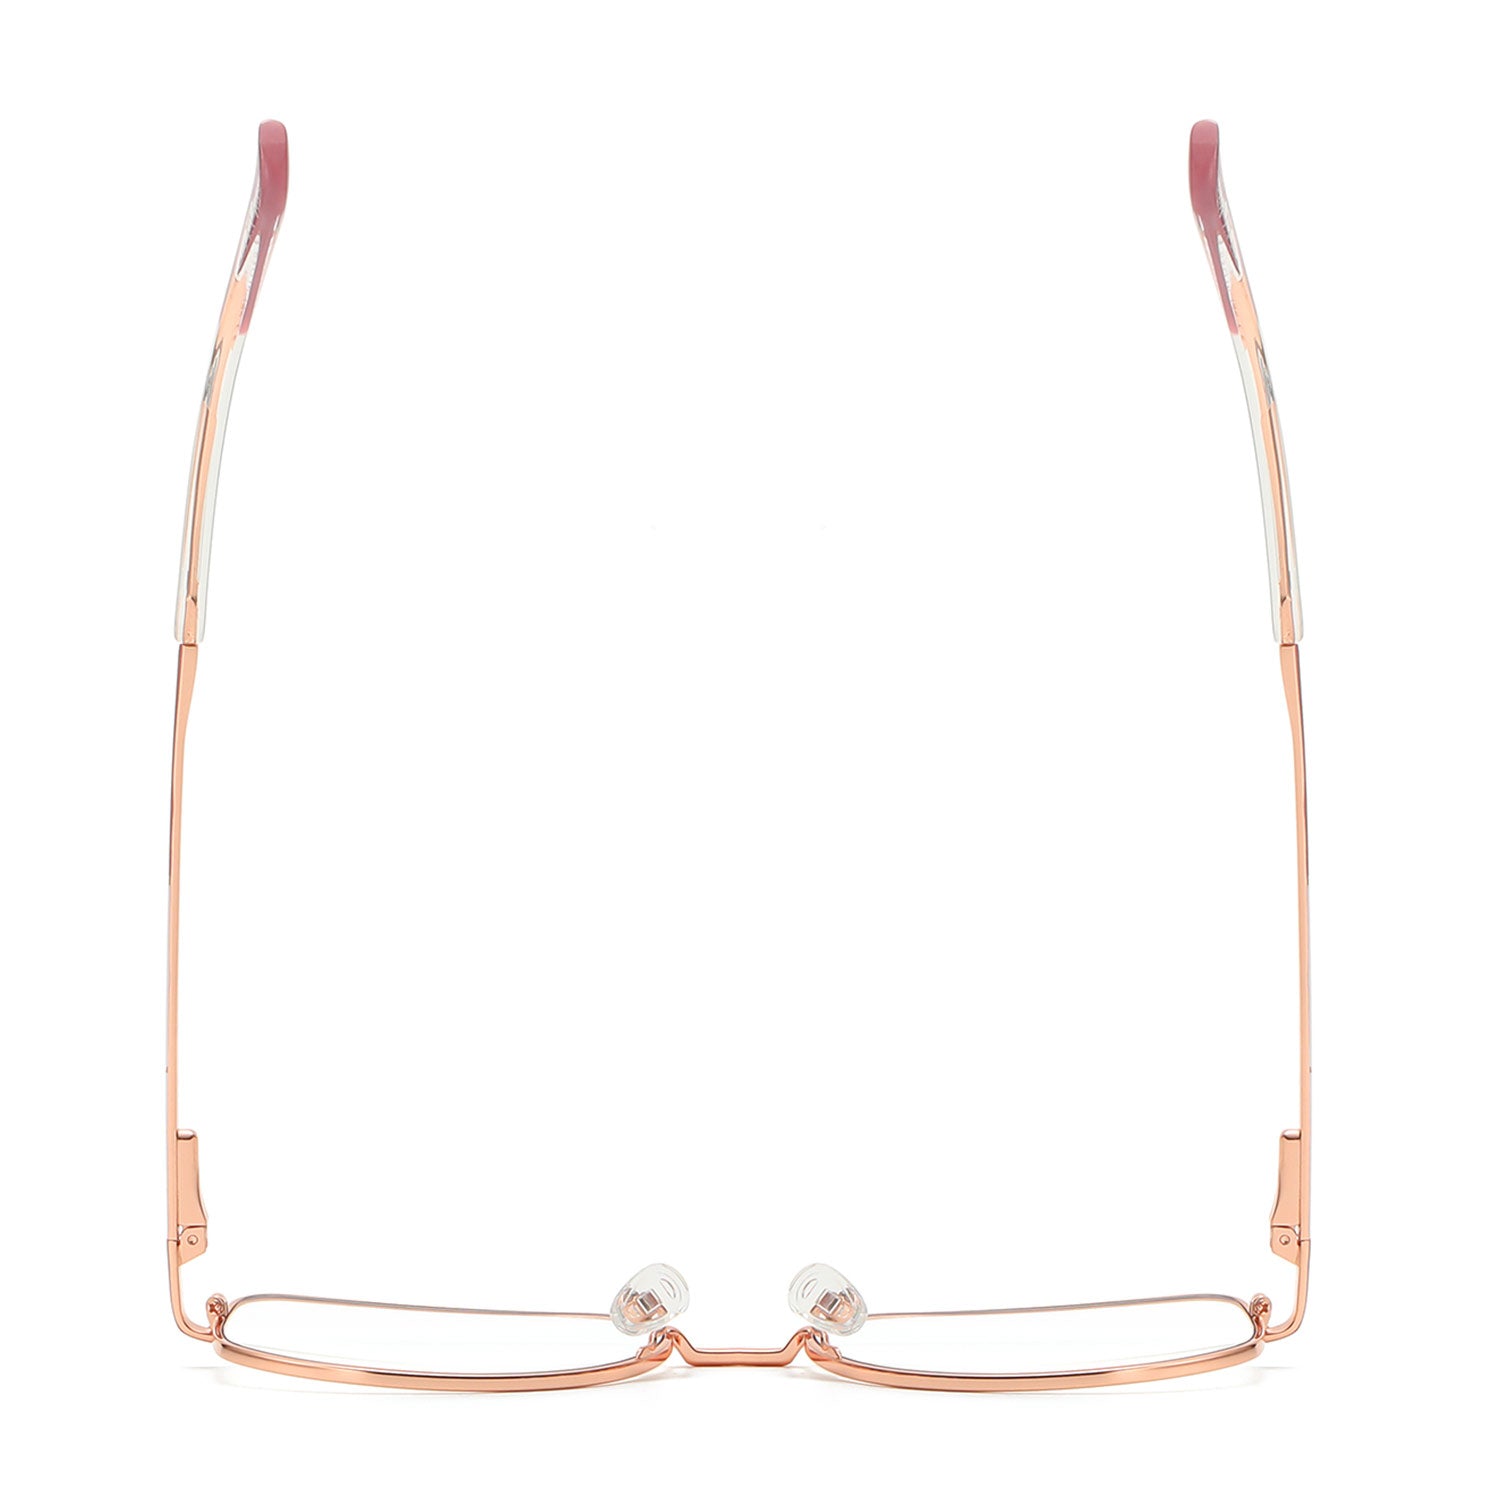 Gray | Geometric/Pink/Metal - Eyeglasses | ELKLOOK